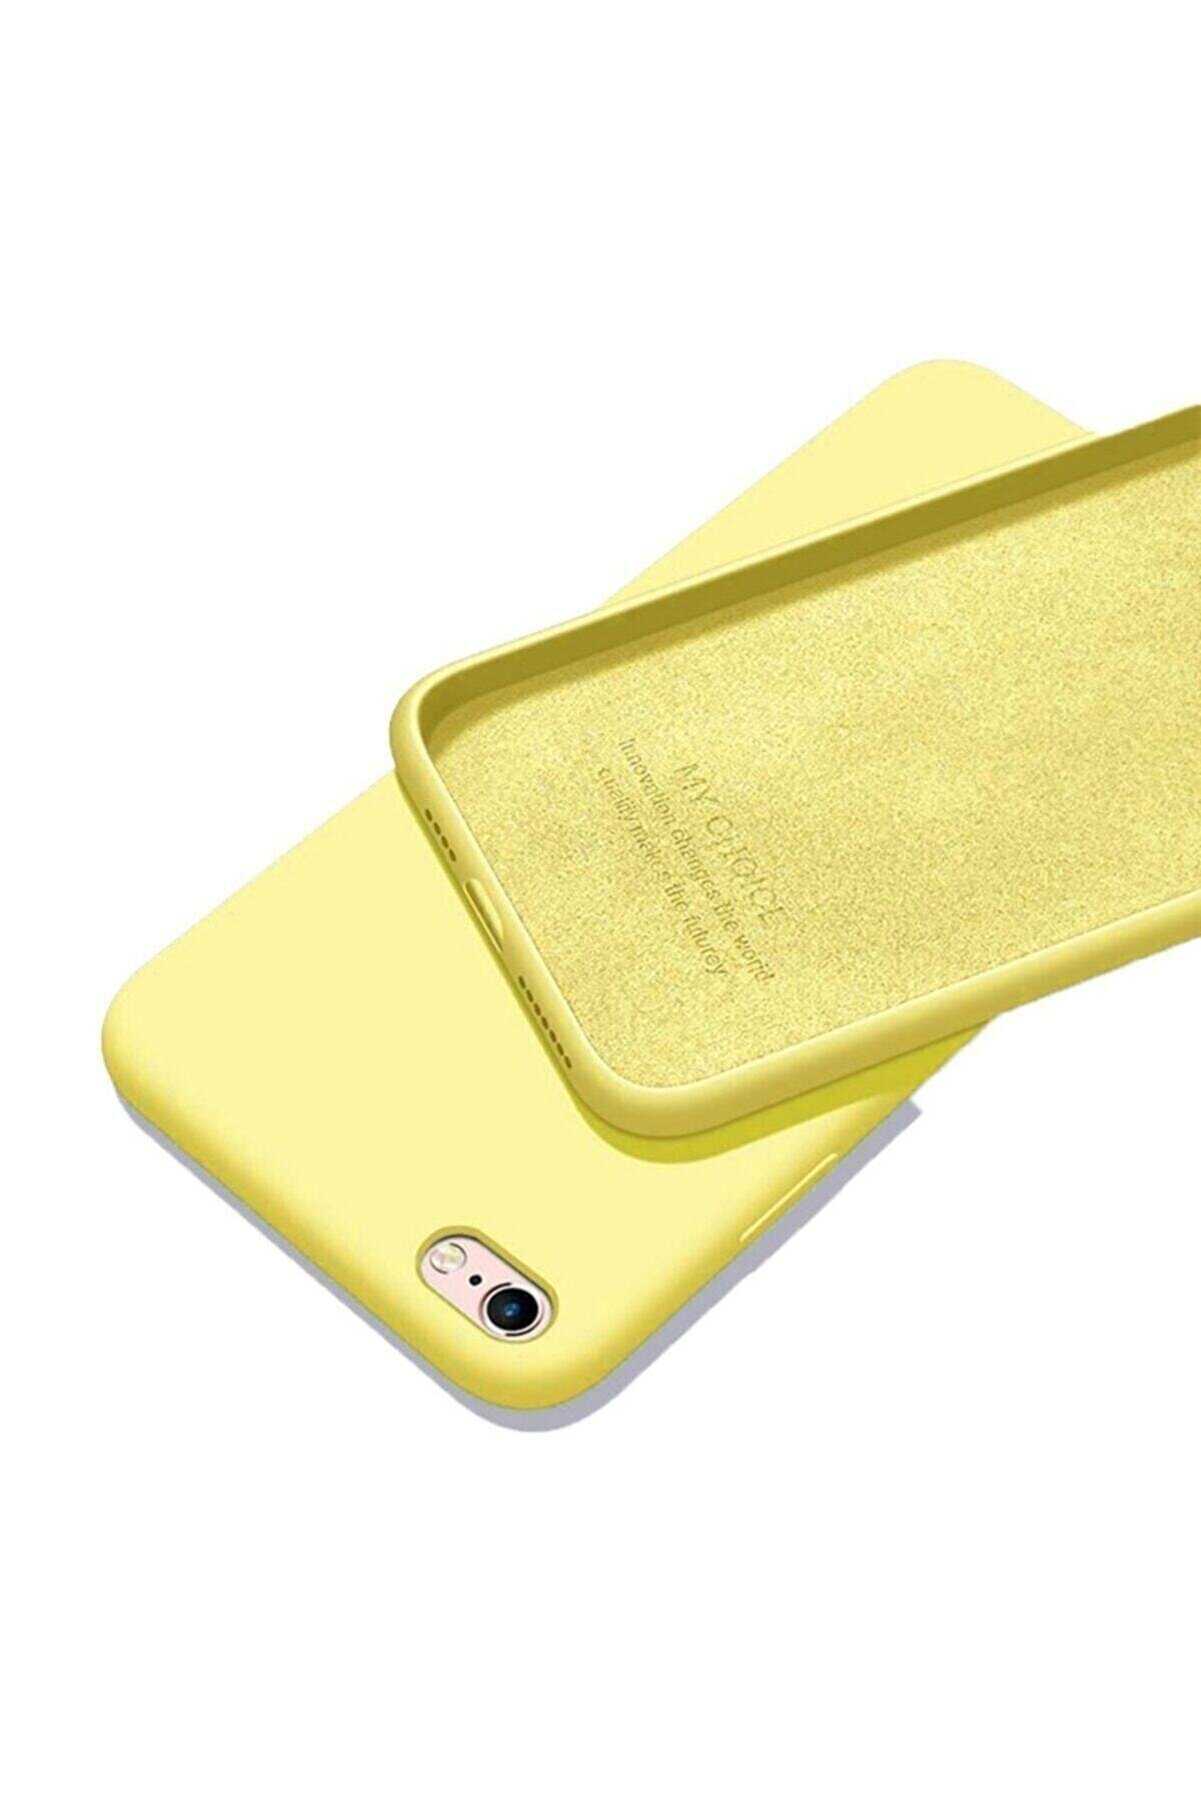 Mopal Iphone 6 / 6s Uyumlu Sarı Içi Kadife Lansman Silikon Kılıf